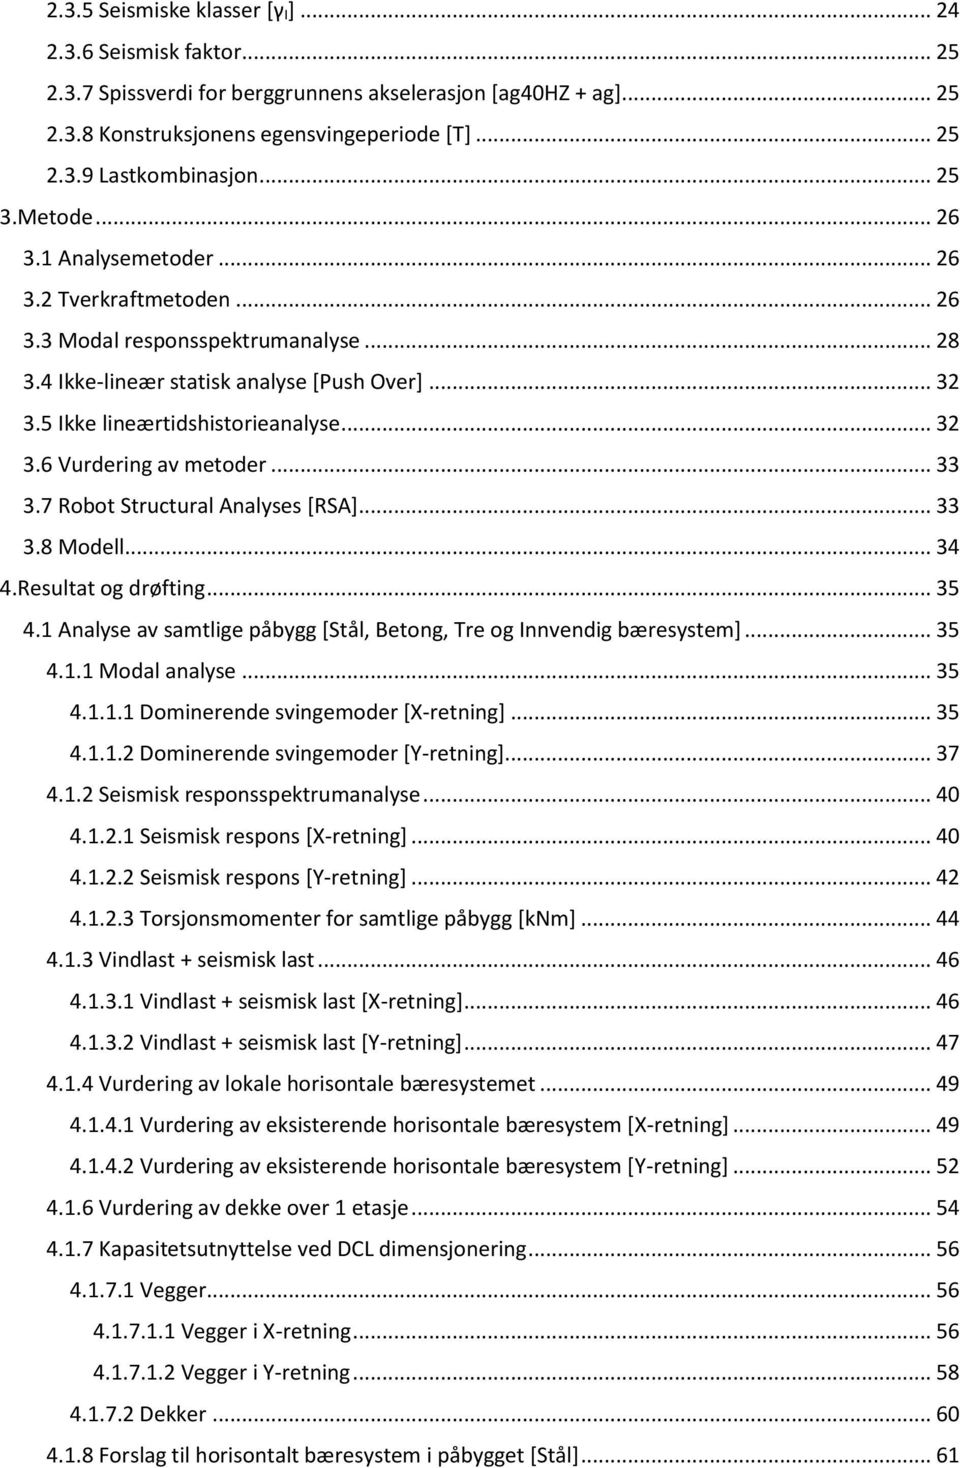 .. 32 3.6 Vurdering av metoder... 33 3.7 Robot Structural Analyses [RSA]... 33 3.8 Modell... 34 4.Resultat og drøfting... 35 4.1 Analyse av samtlige påbygg [Stål, Betong, Tre og Innvendig bæresystem].